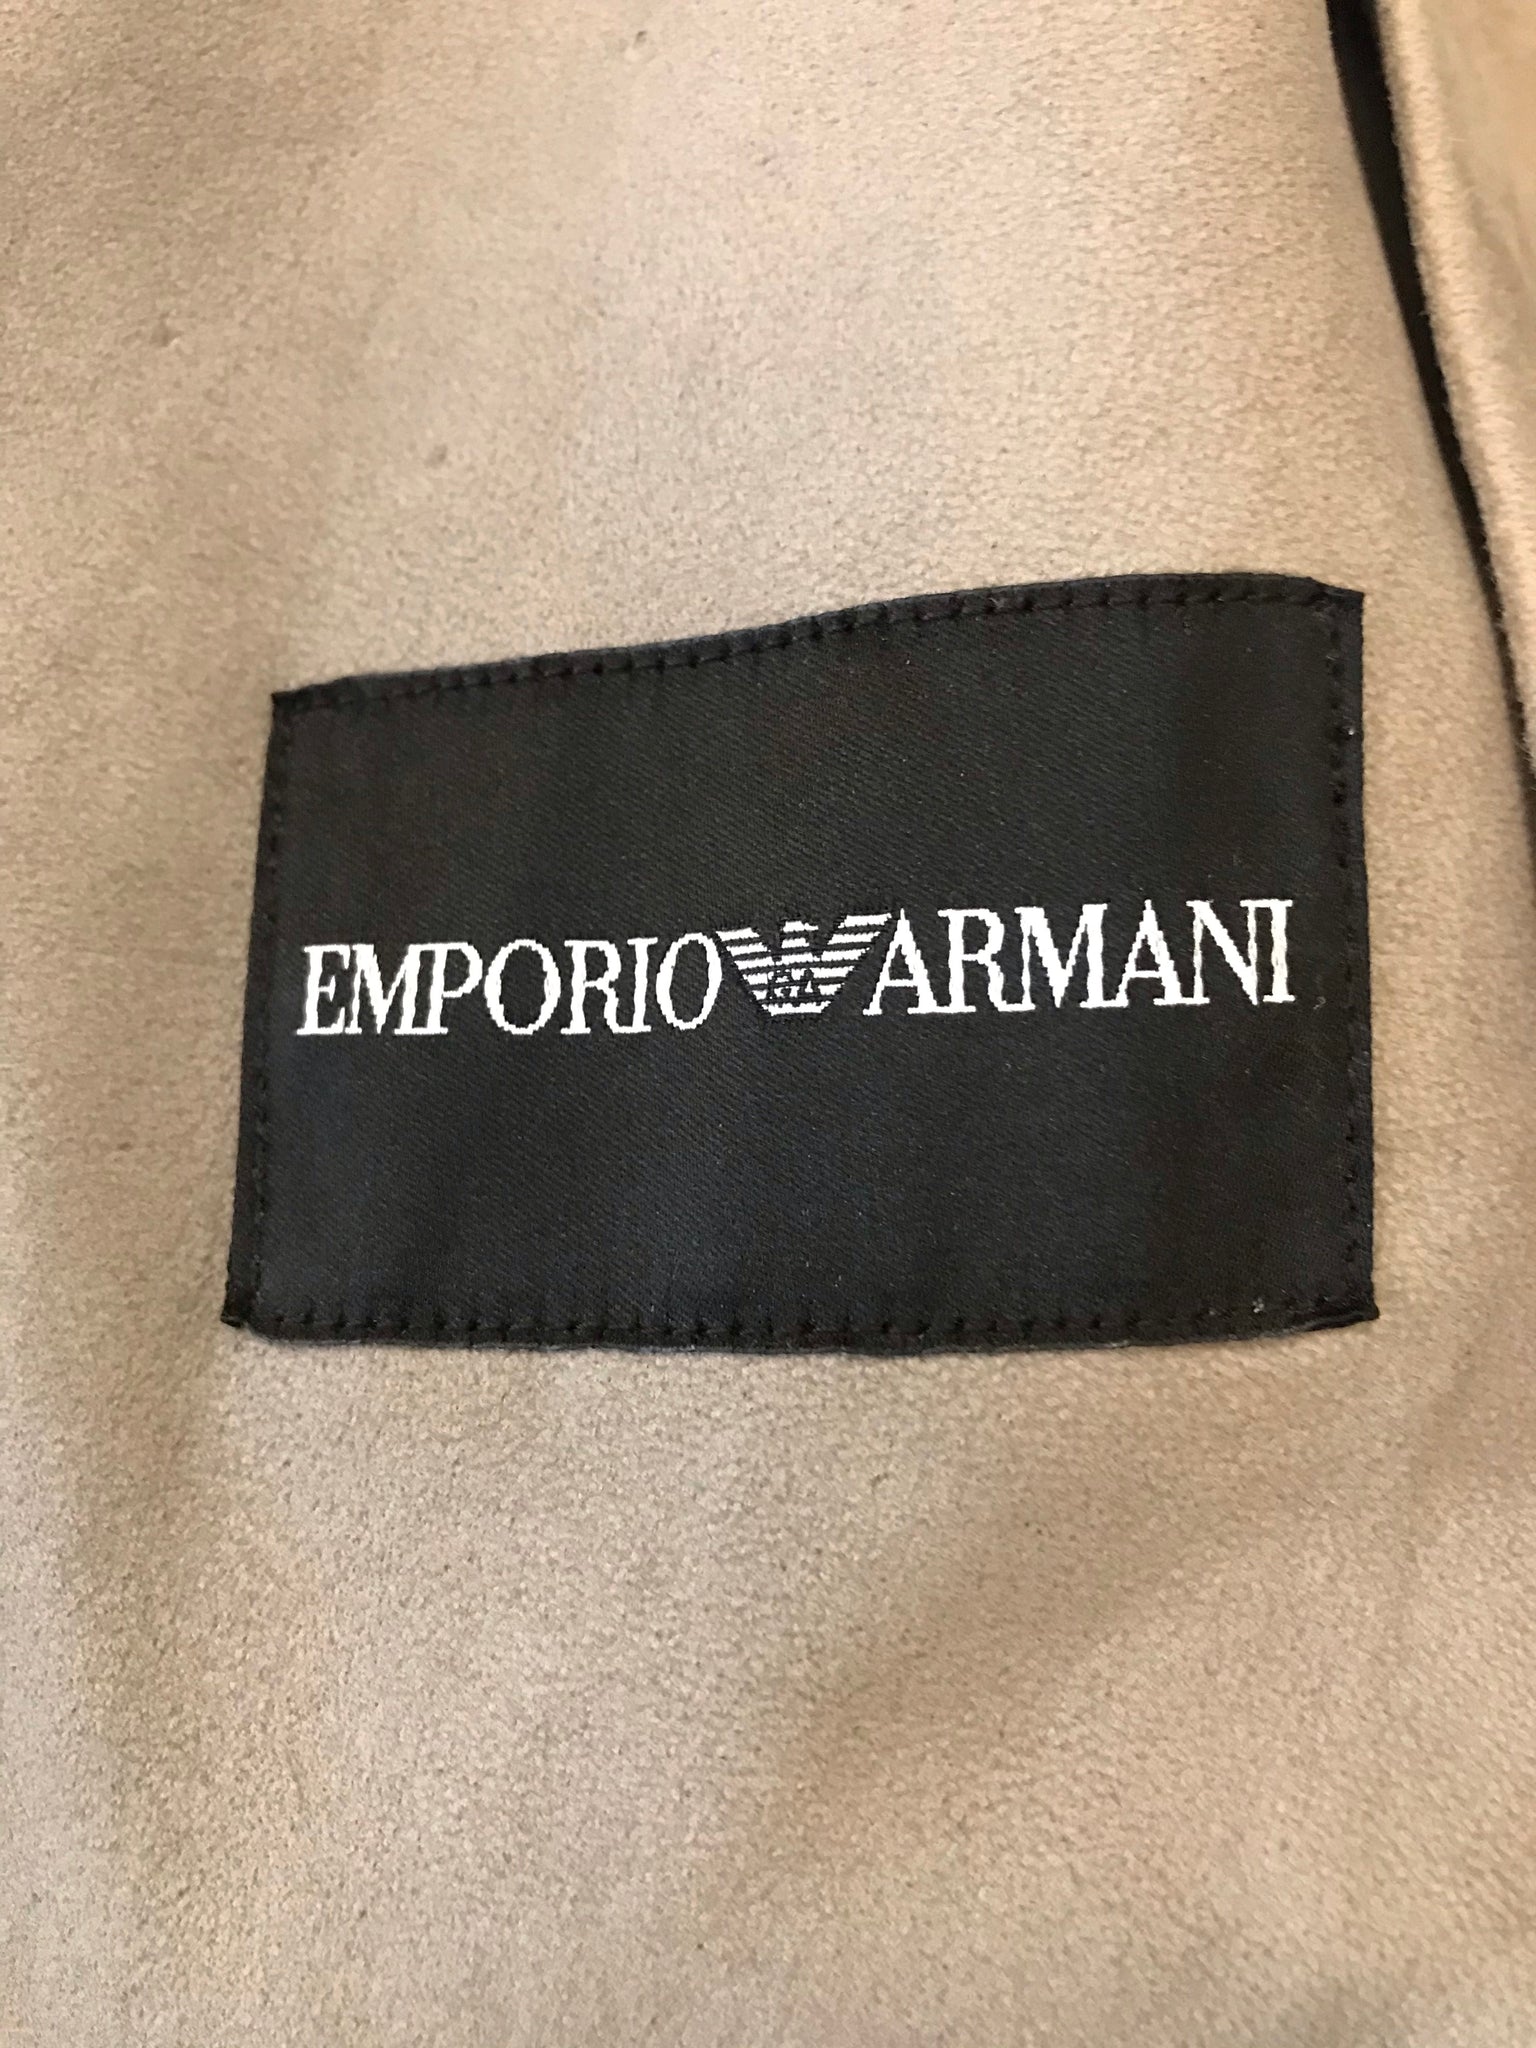 Isabella's Wardrobe Emporio Armani Gents Suede Hooded Jacket.